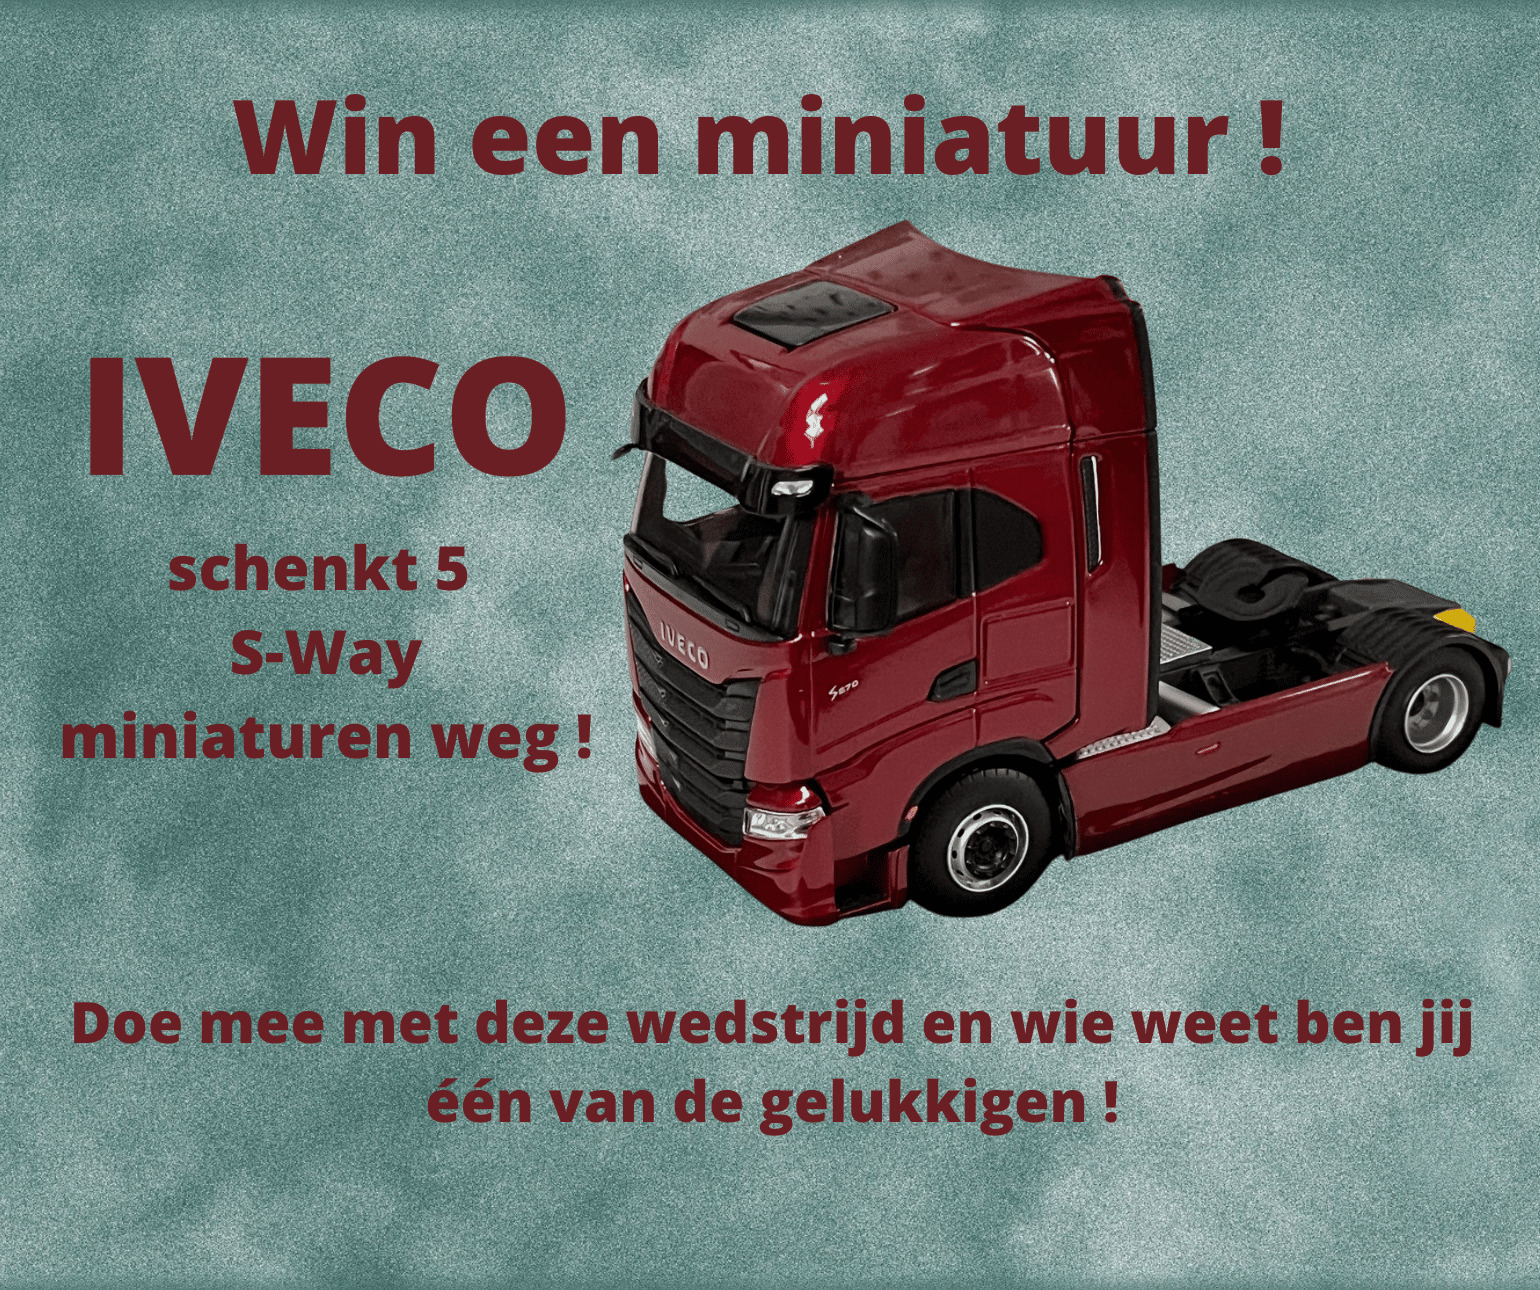 Wedstrijd: win een miniatuur van de IVECO S-Way !